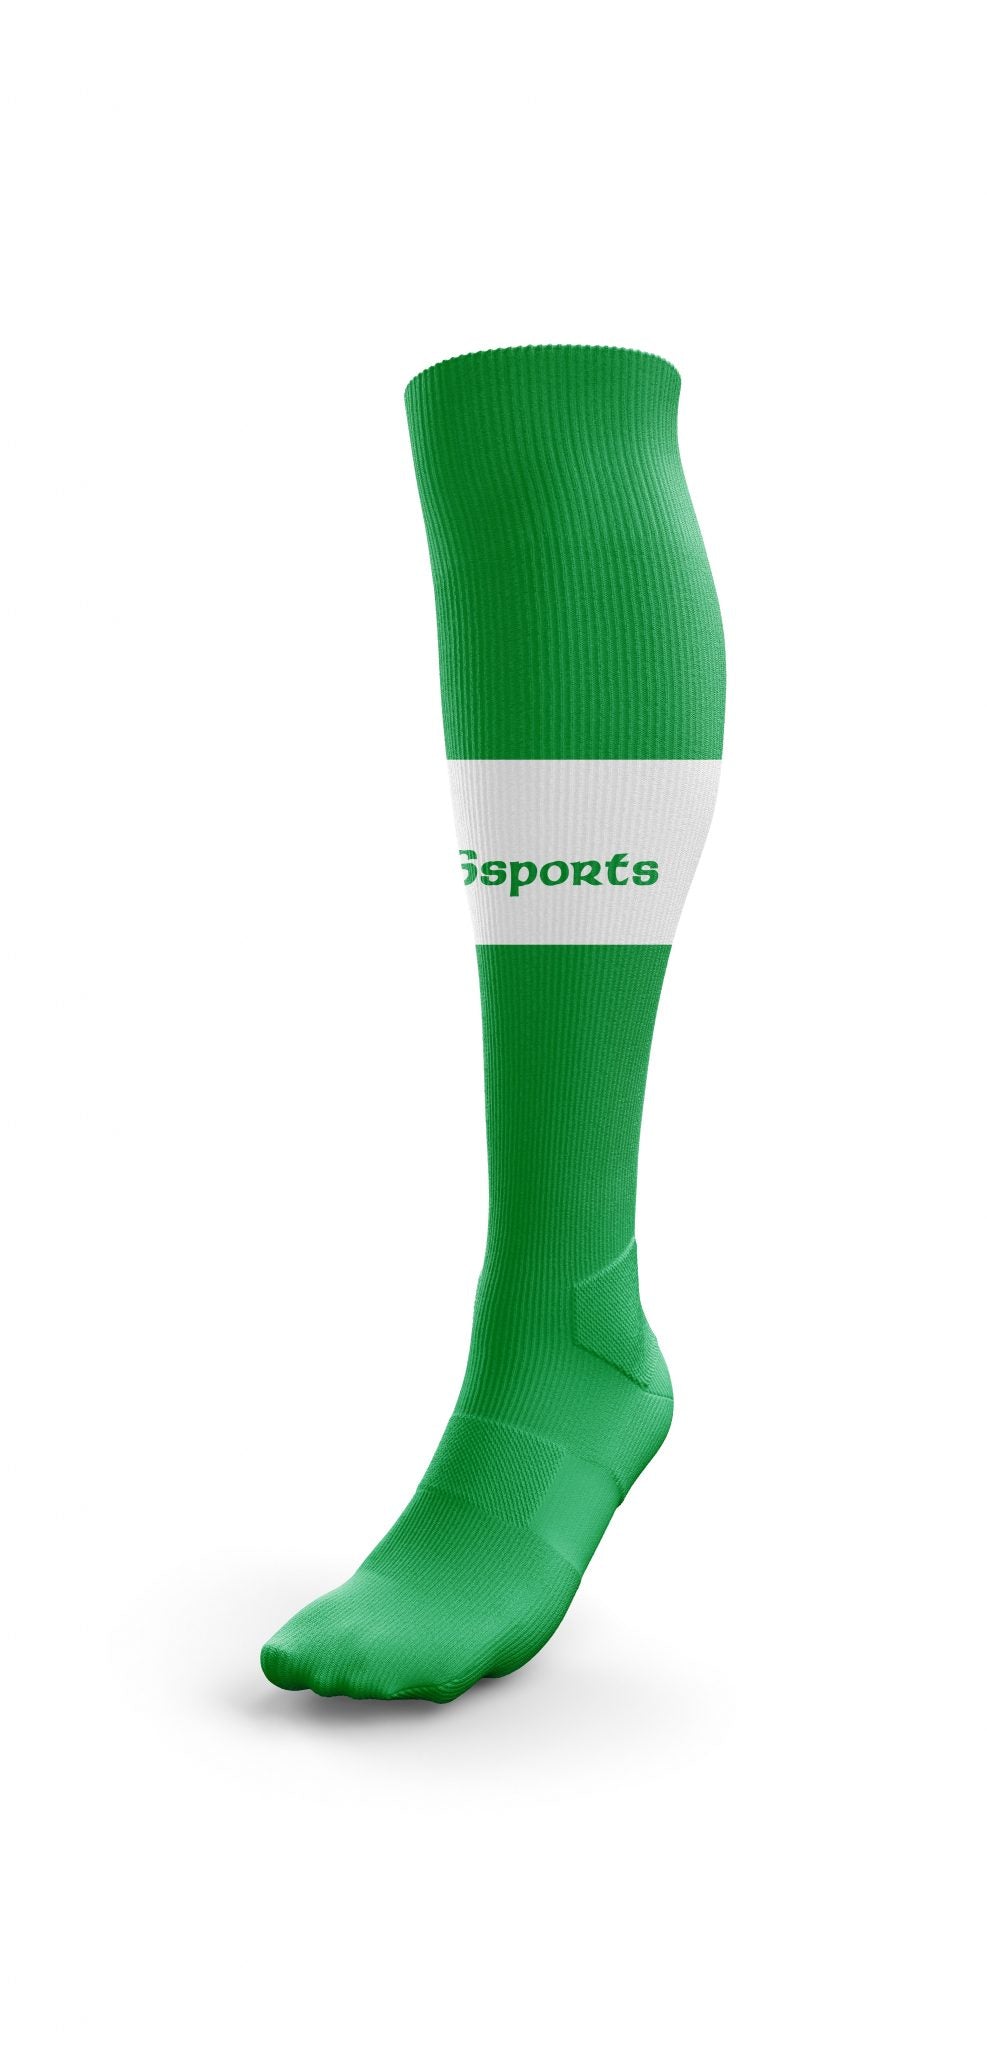 Soccer Socks - Green/White